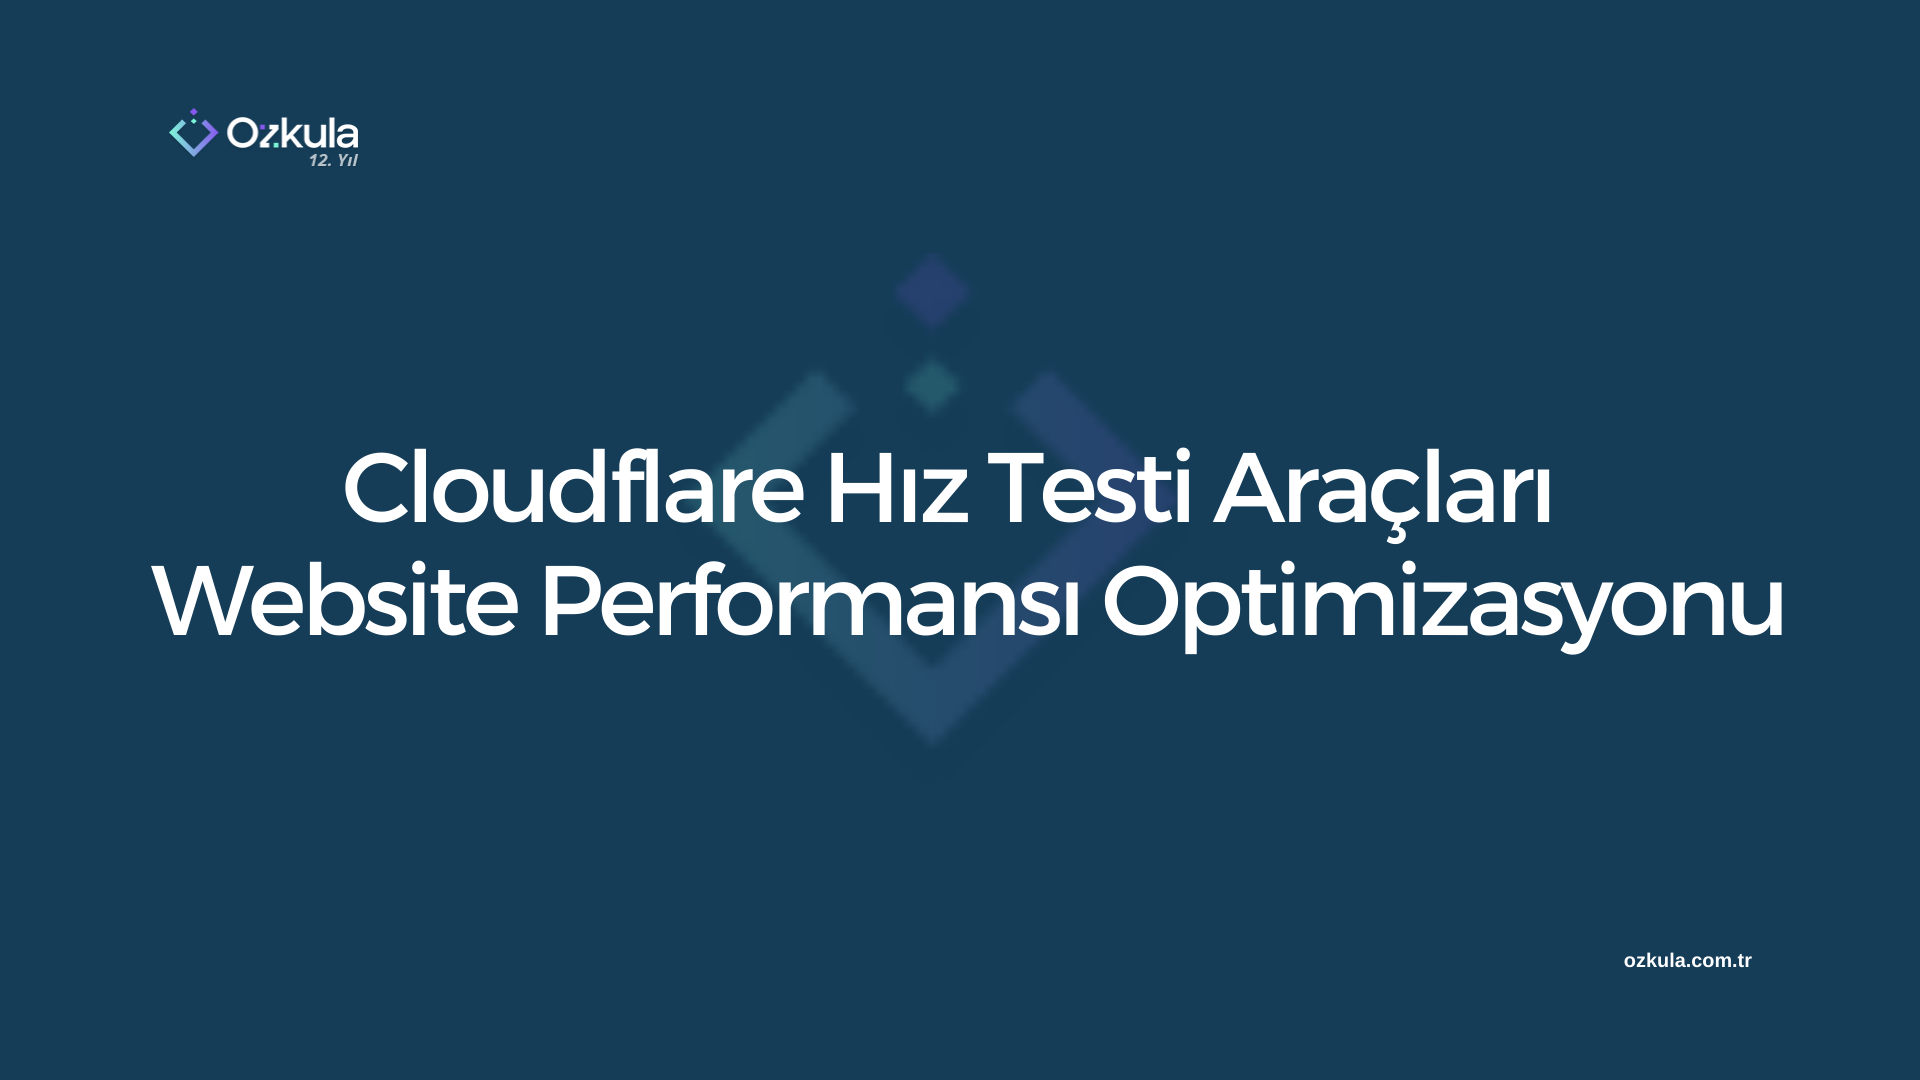 Cloudflare Hız Testi ve Website Performansı Optimizasyonu